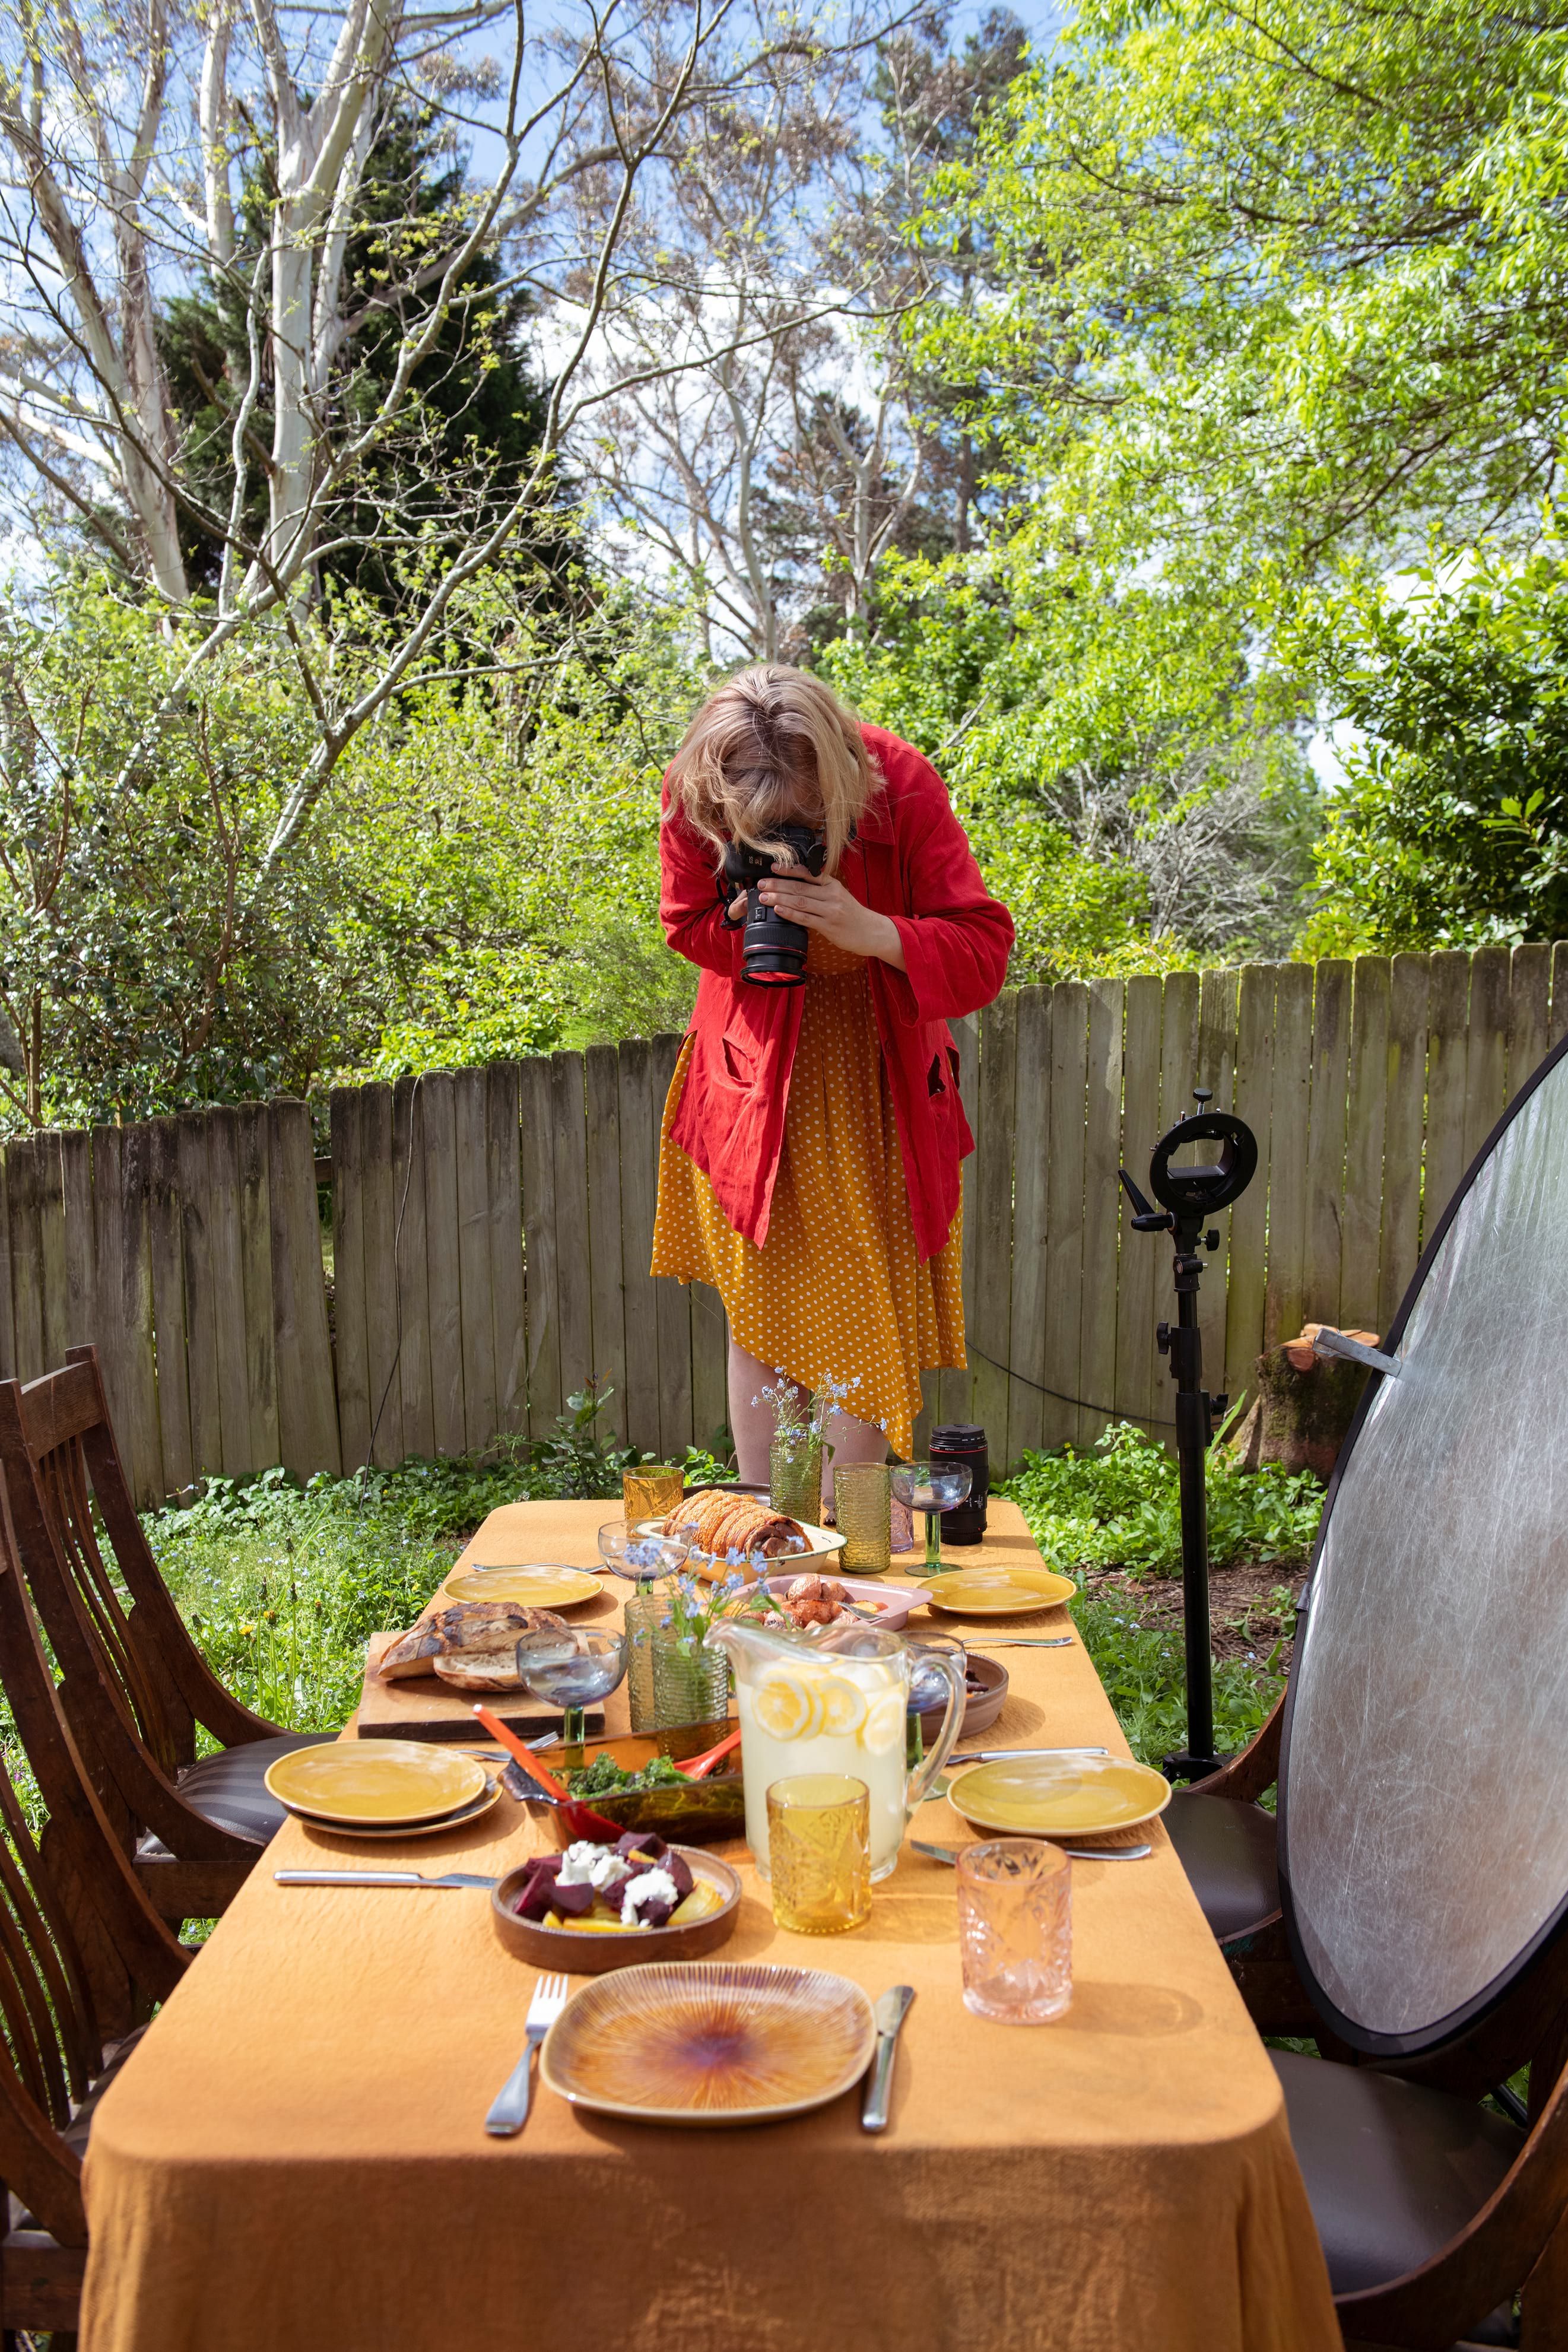 料理が置かれたテーブルの写真を撮影している女性